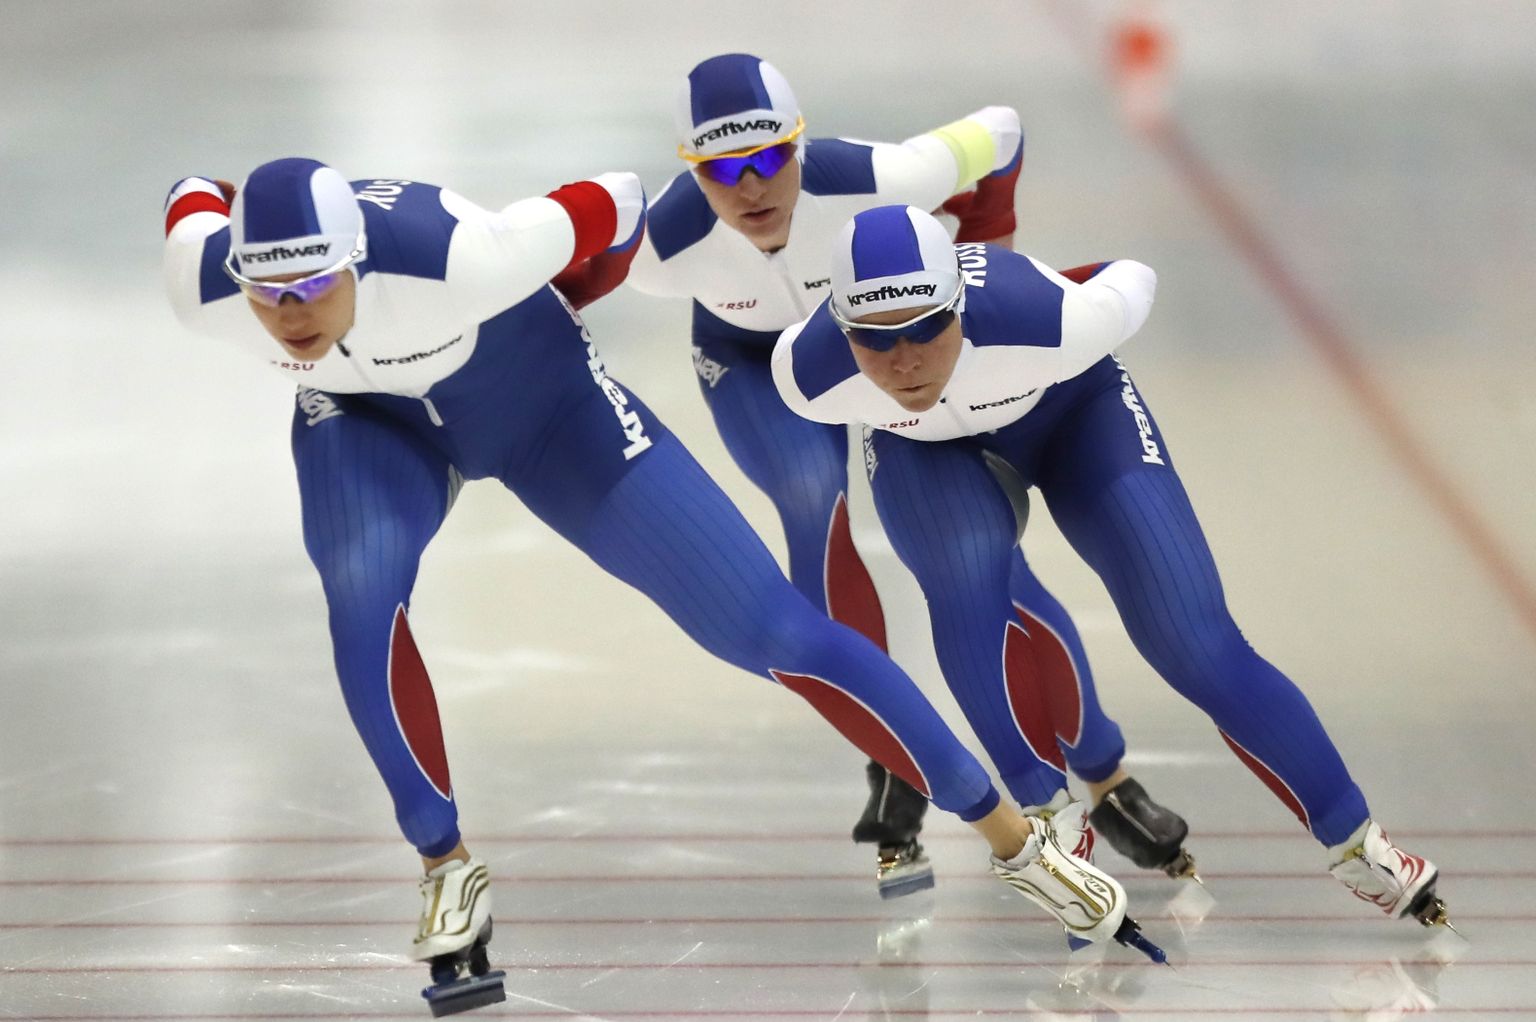 Kolomna jäähallis peeti 2018. aastal kiiruisutamise EM, nelja aasta pärast loodavad venelased seal uuesti sama võistlust korraldada.